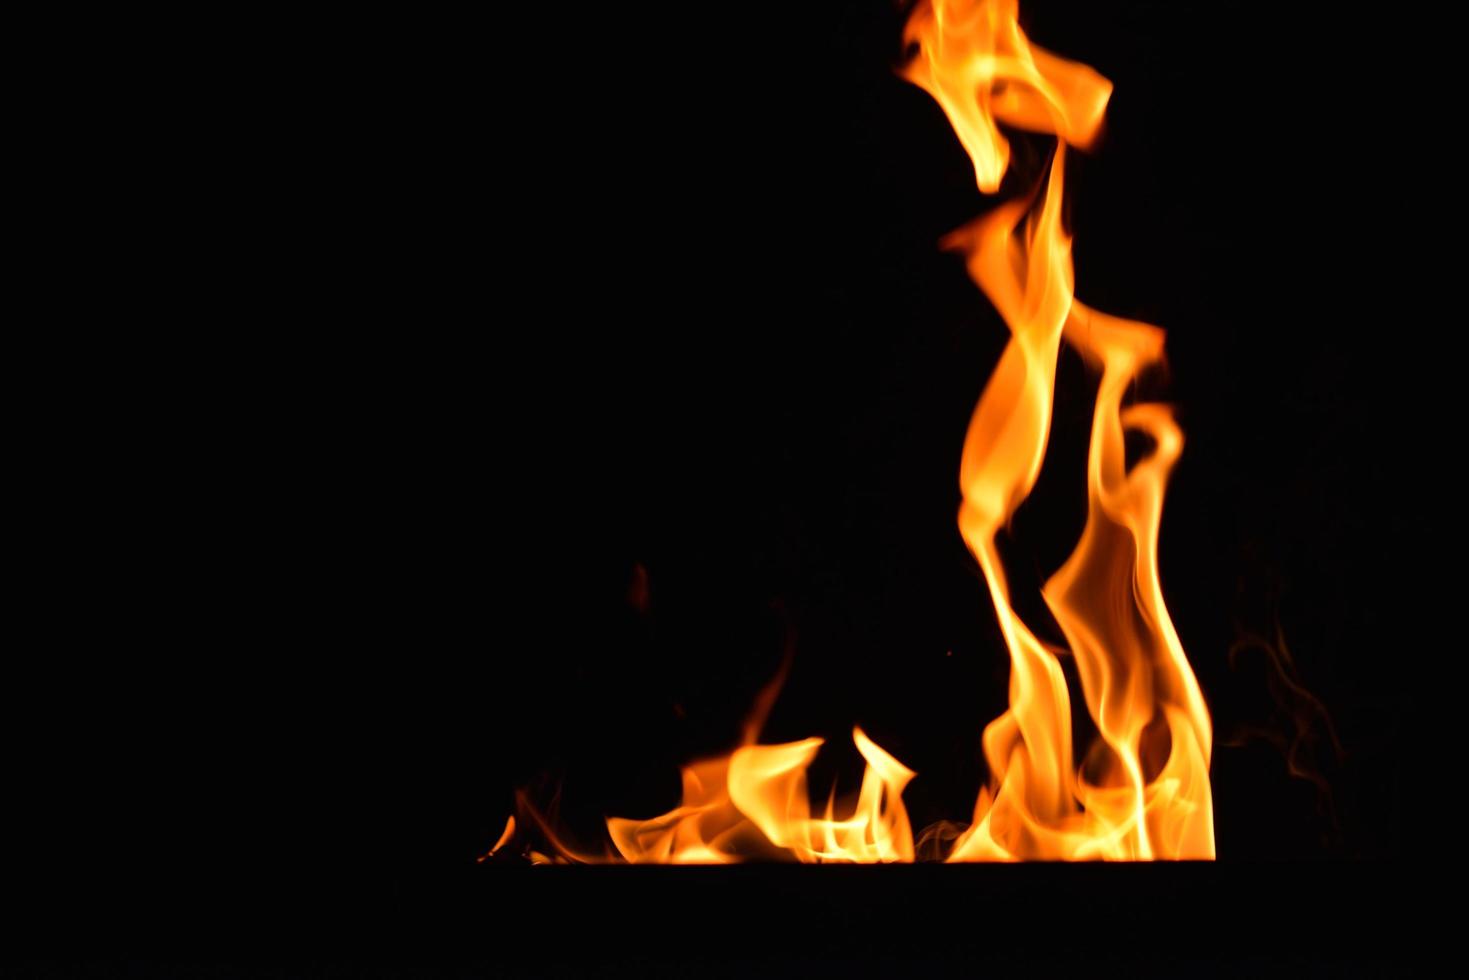 fondo de llama de fuego foto